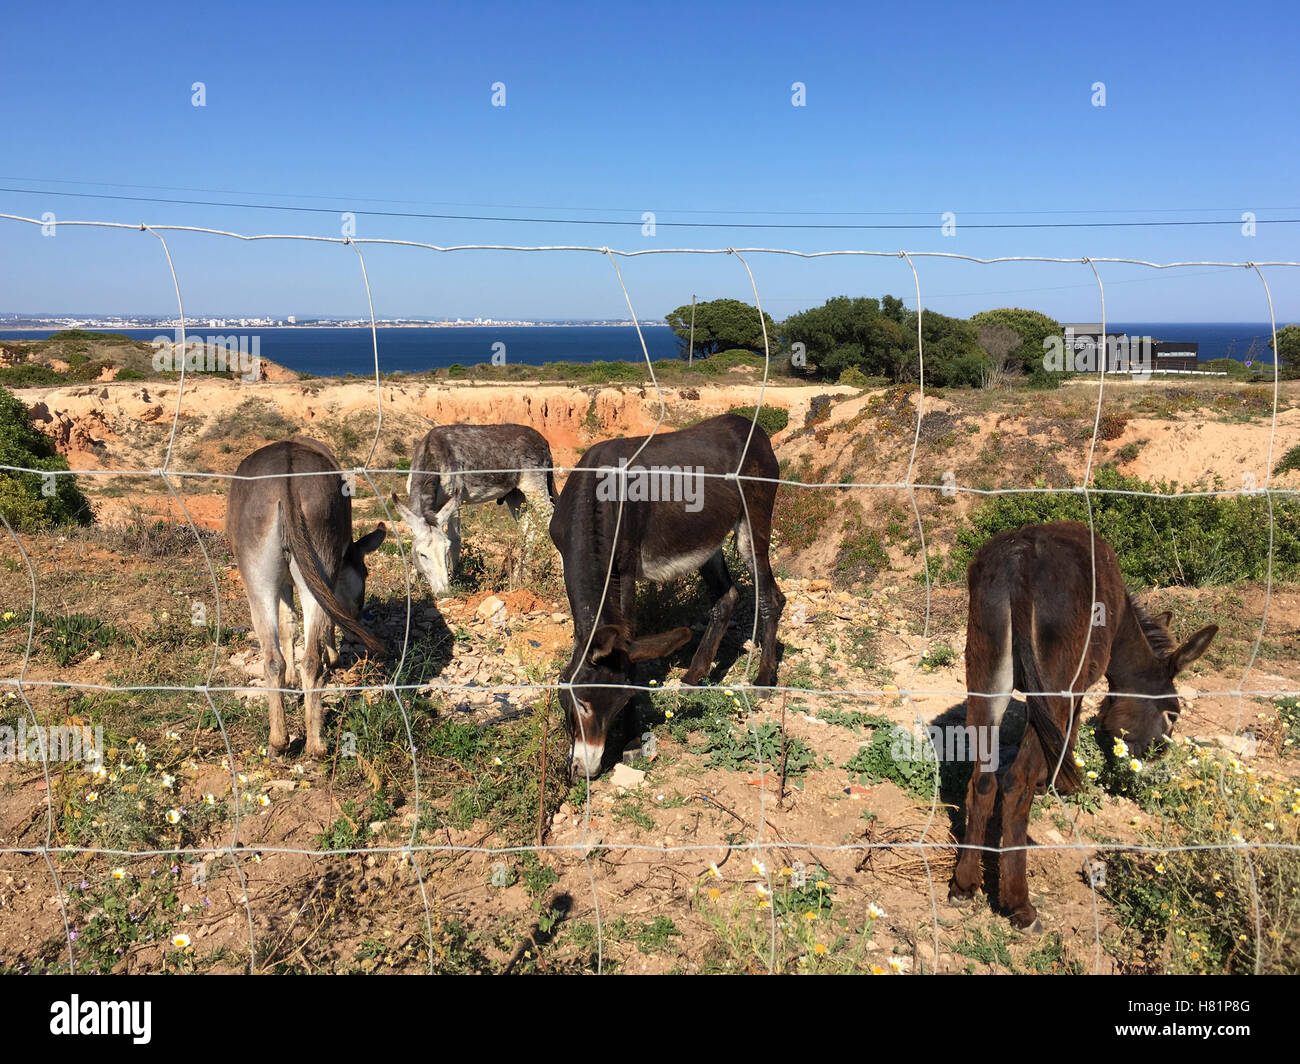 Vecchio affioramenti rocciosi con alcuni asini dietro una recinzione Foto Stock